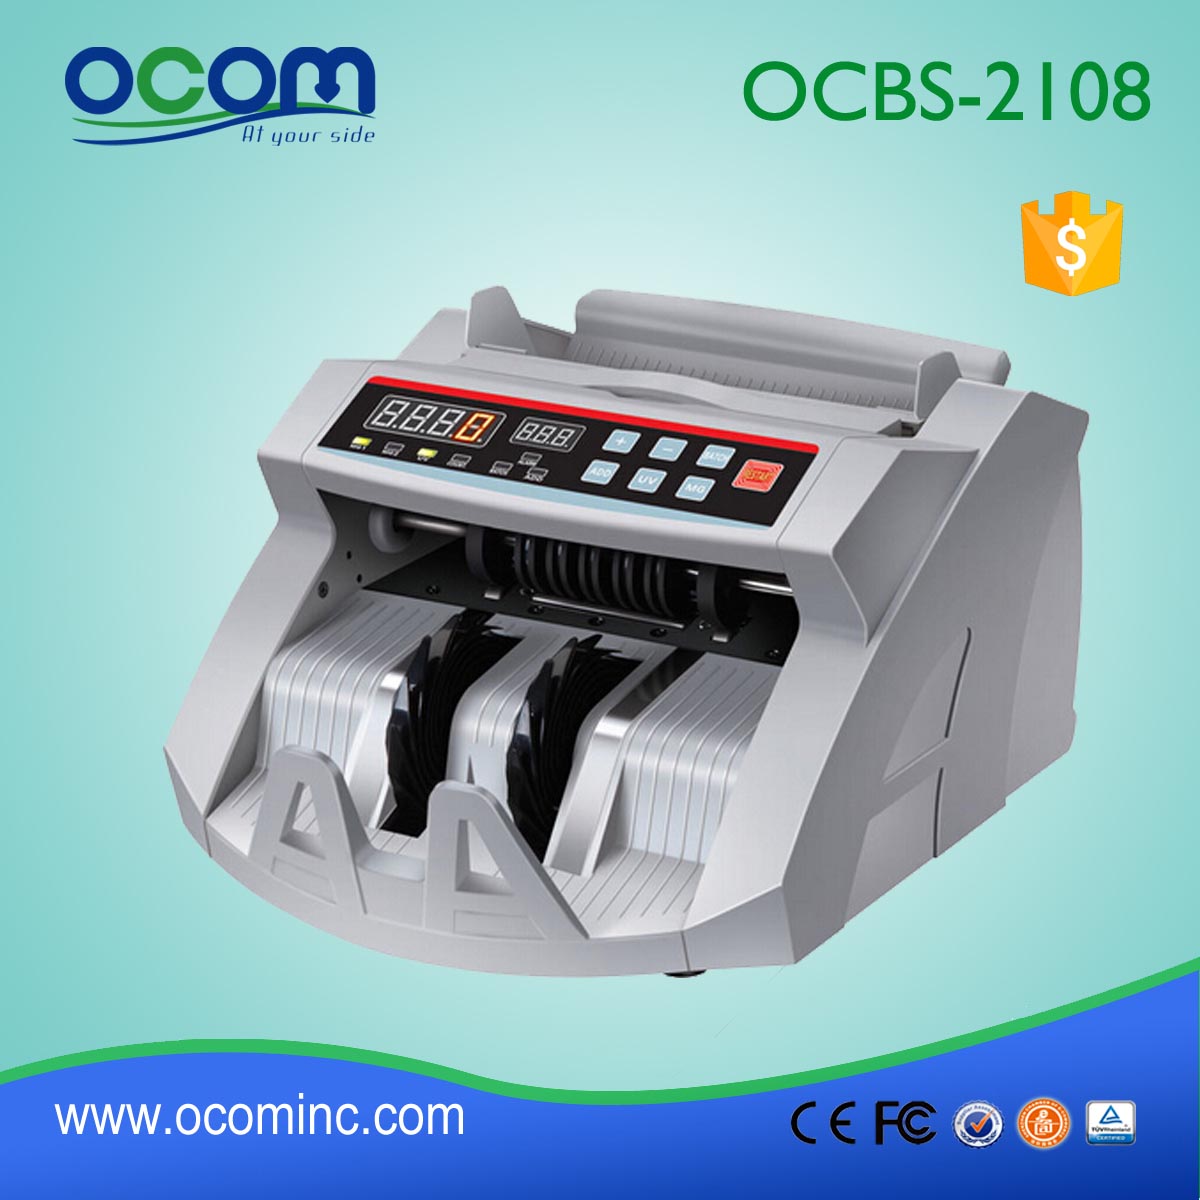 (OCBC-2108) - OCOM heeft 2016 nieuwste automatische bill teller